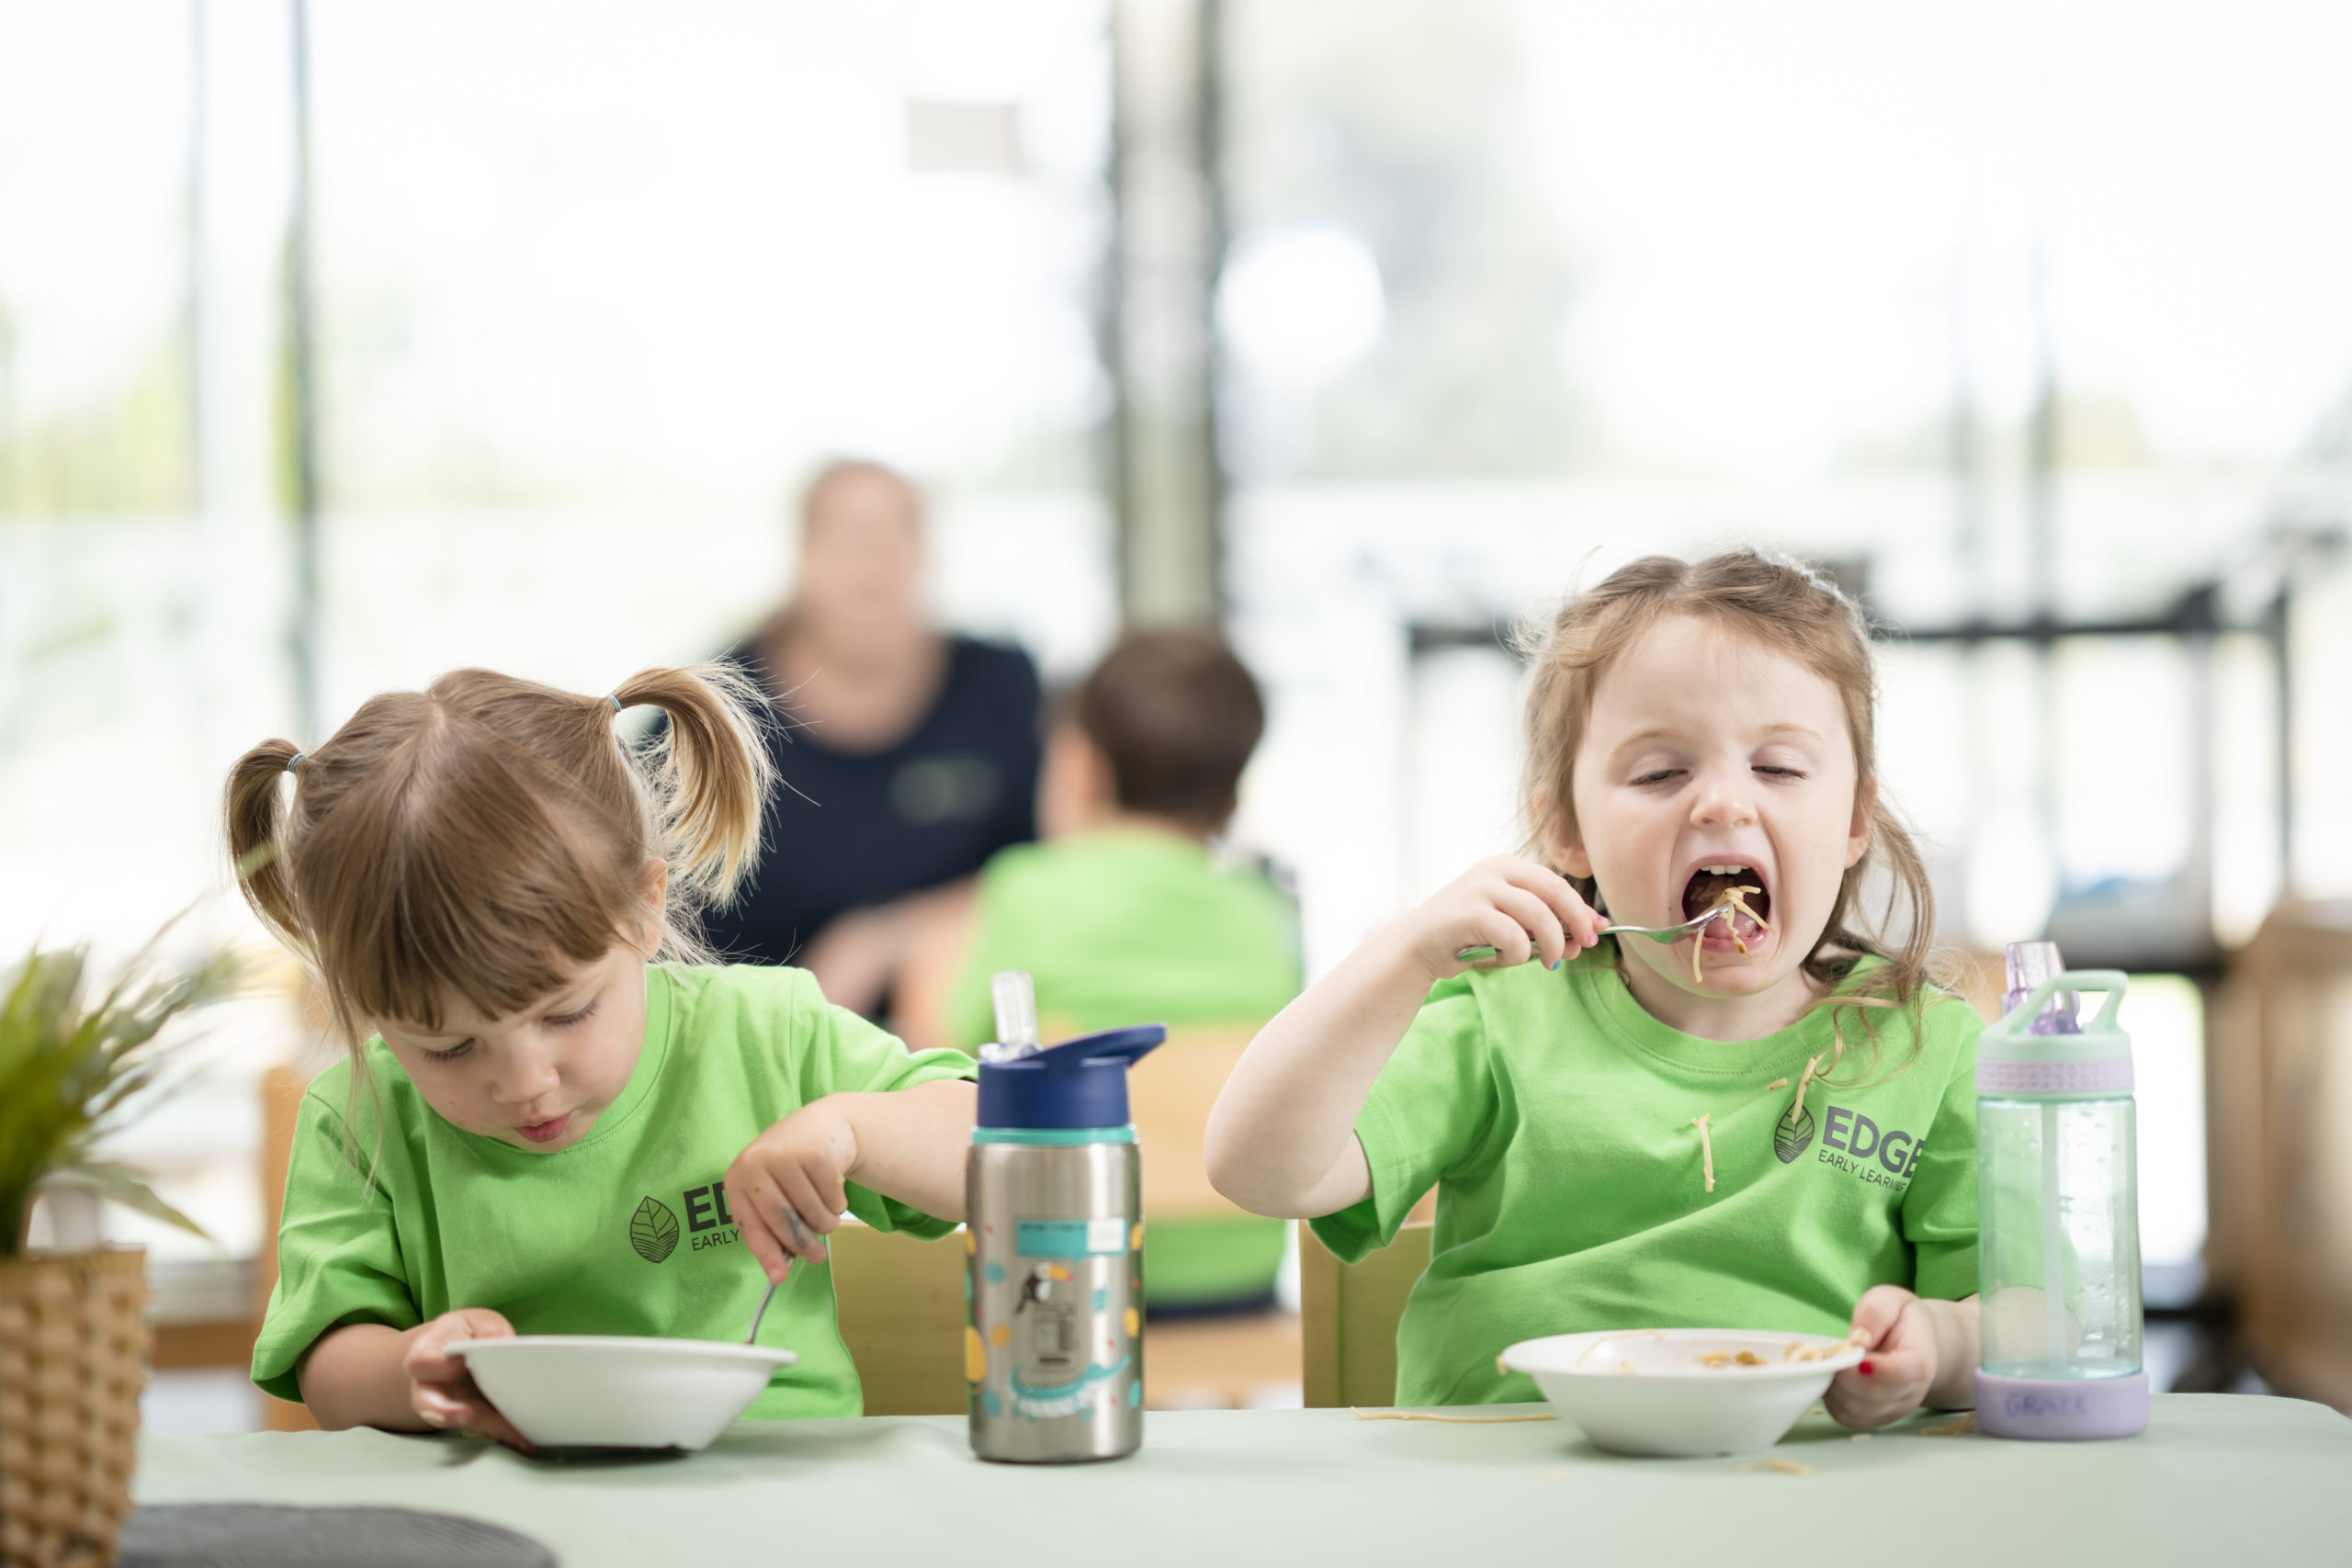 Navigating childhood food allergies